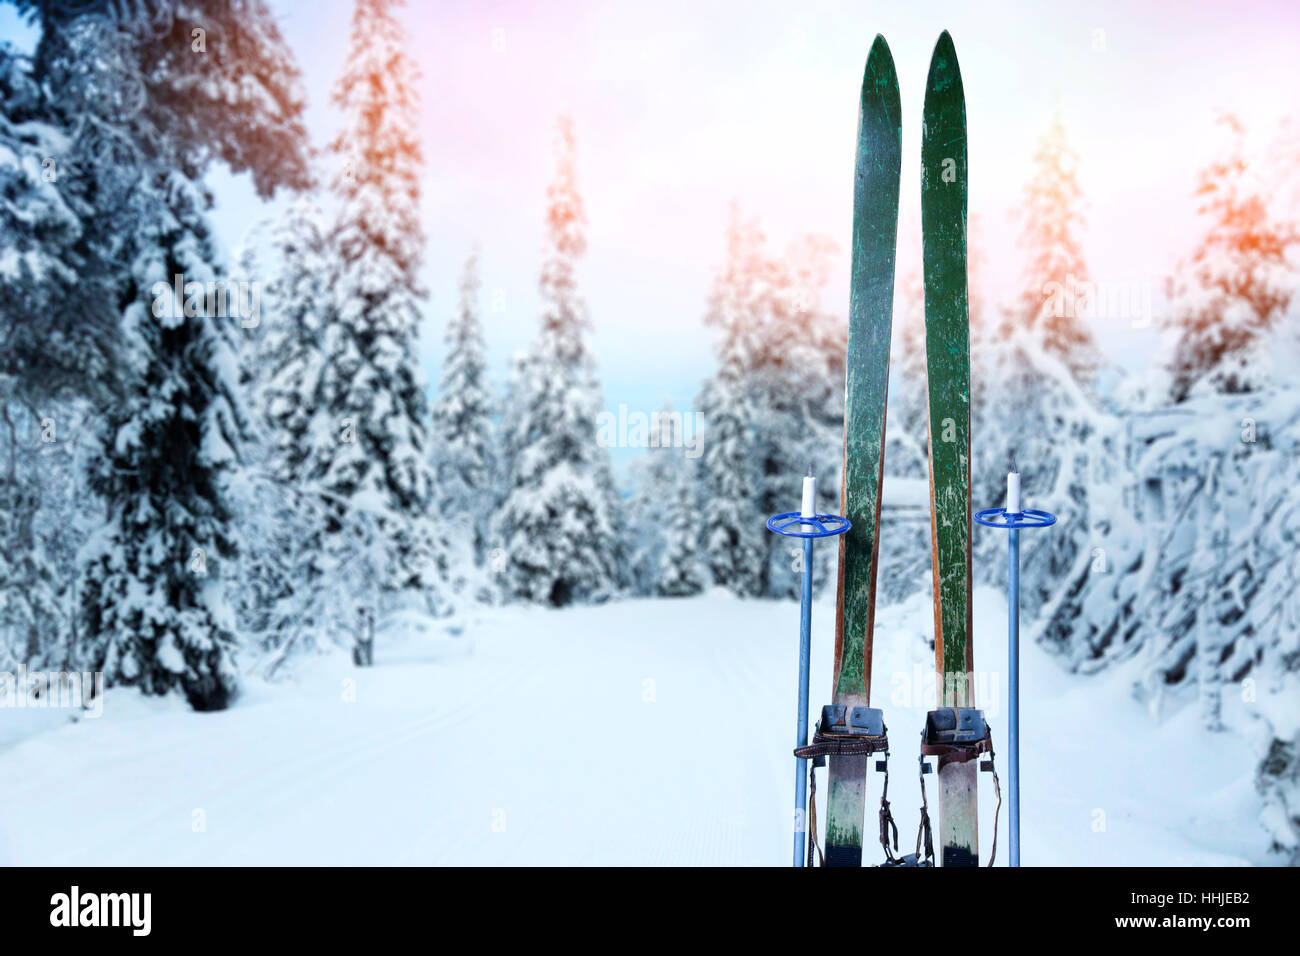 Piste de ski de neige rétro avec des skis en bois et des bâtons de ski Banque D'Images